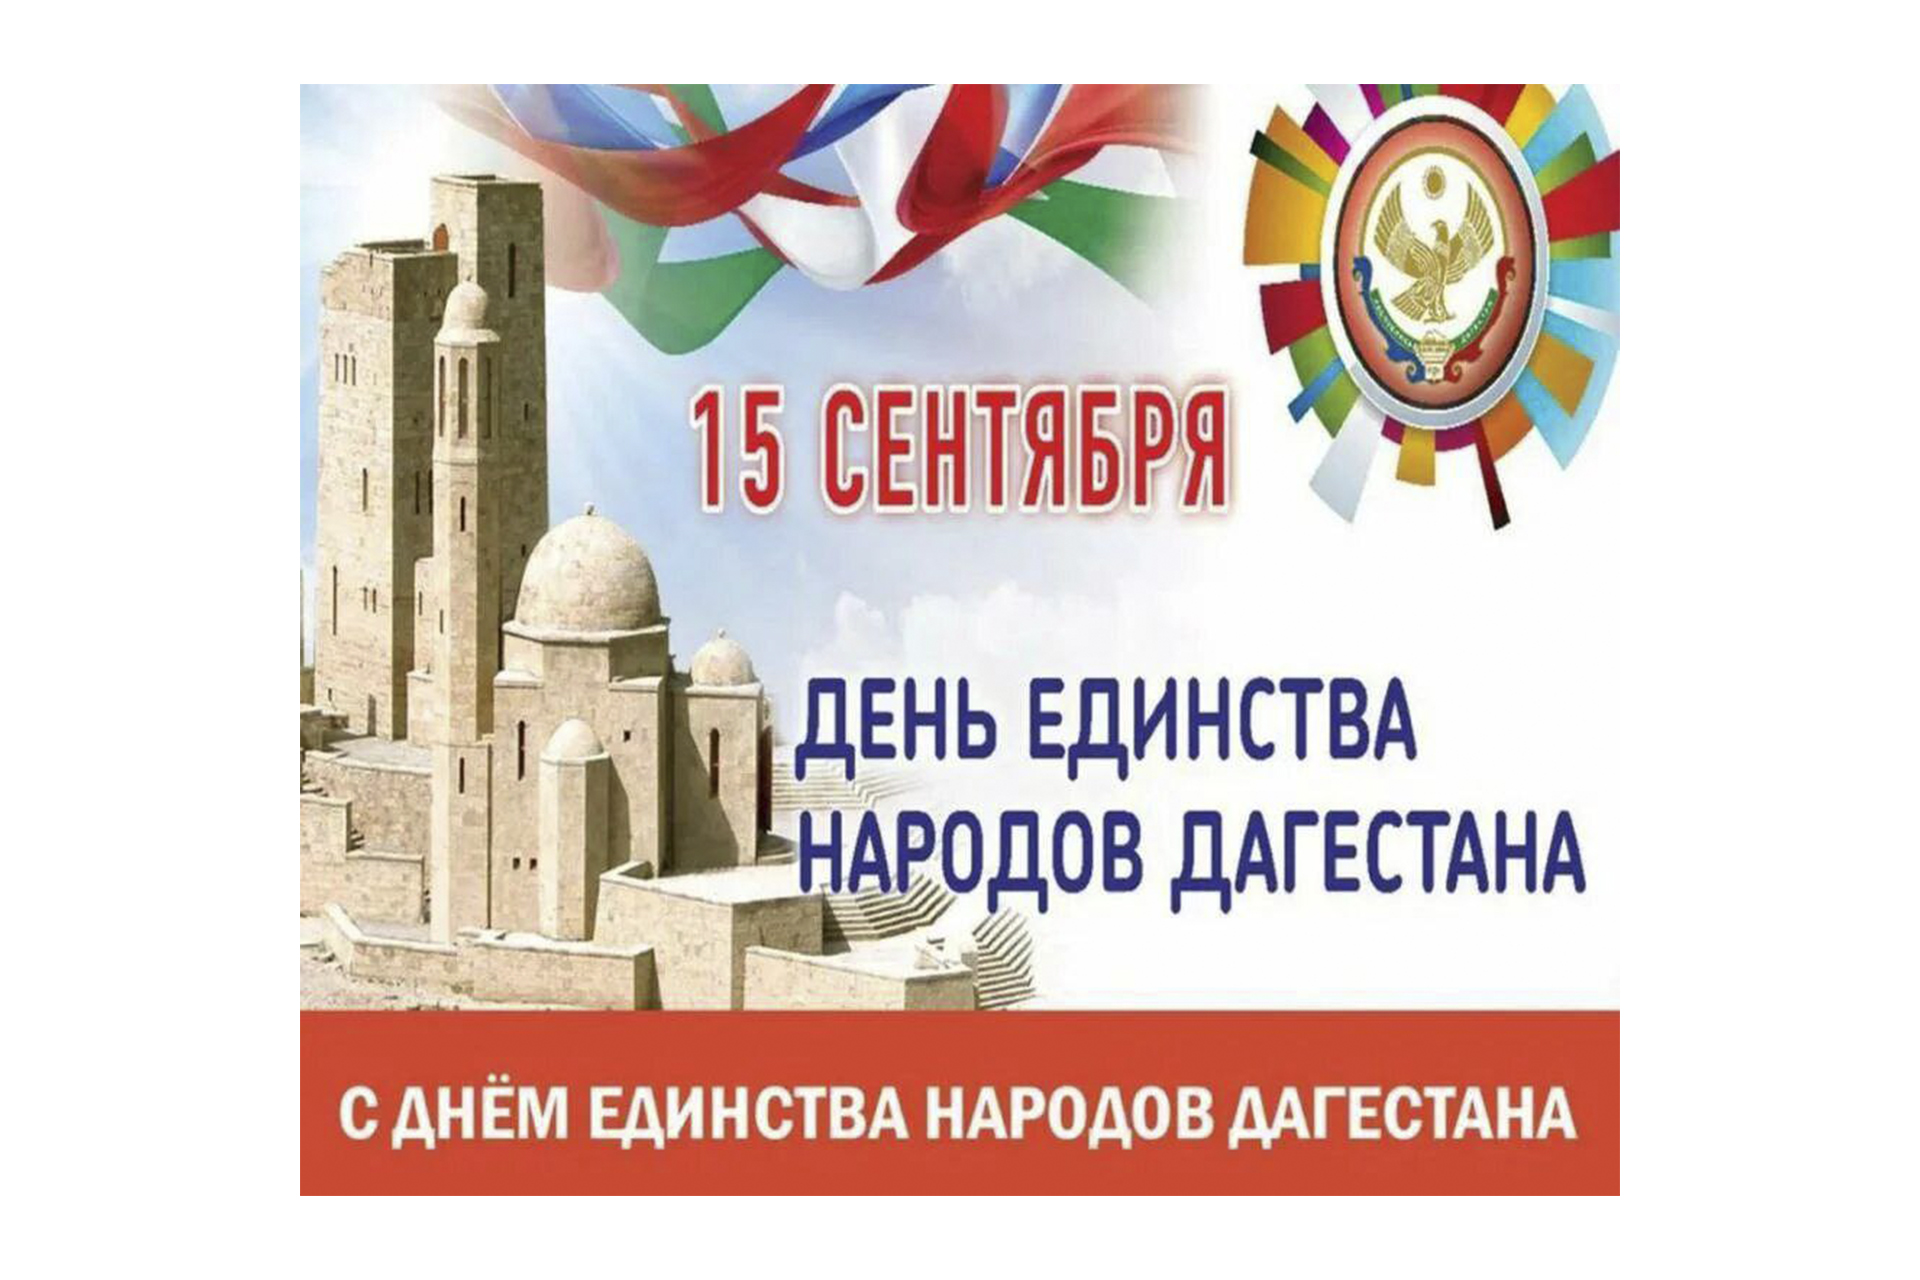 С Днем единства народов Дагестана